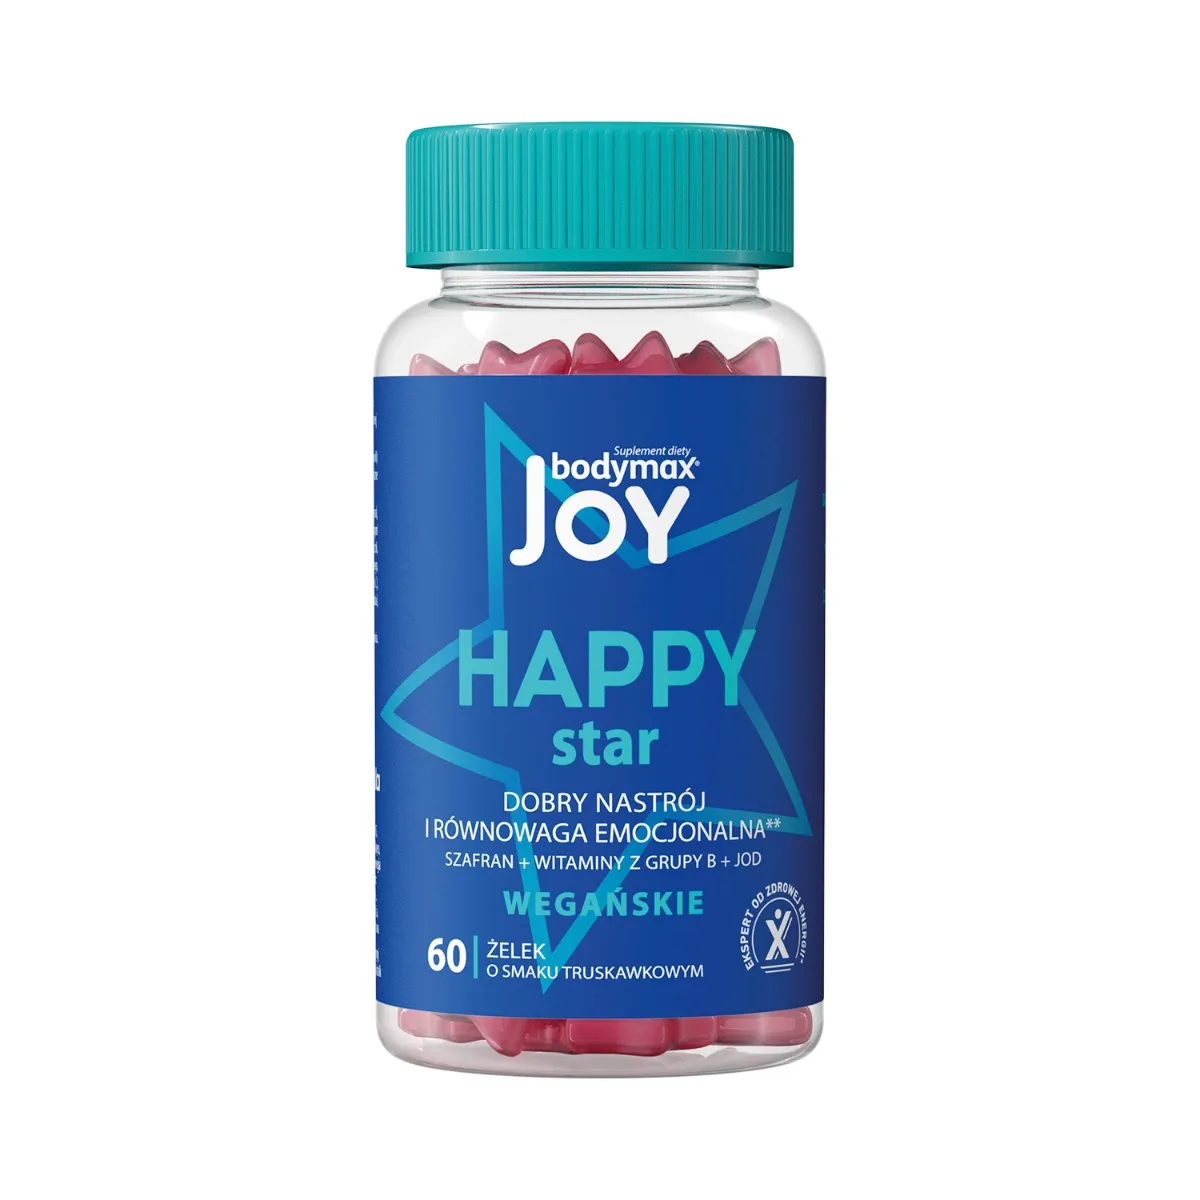 Bodymax Joy Happy Star, suplement diety, 60 żelek o smaku truskawkowym